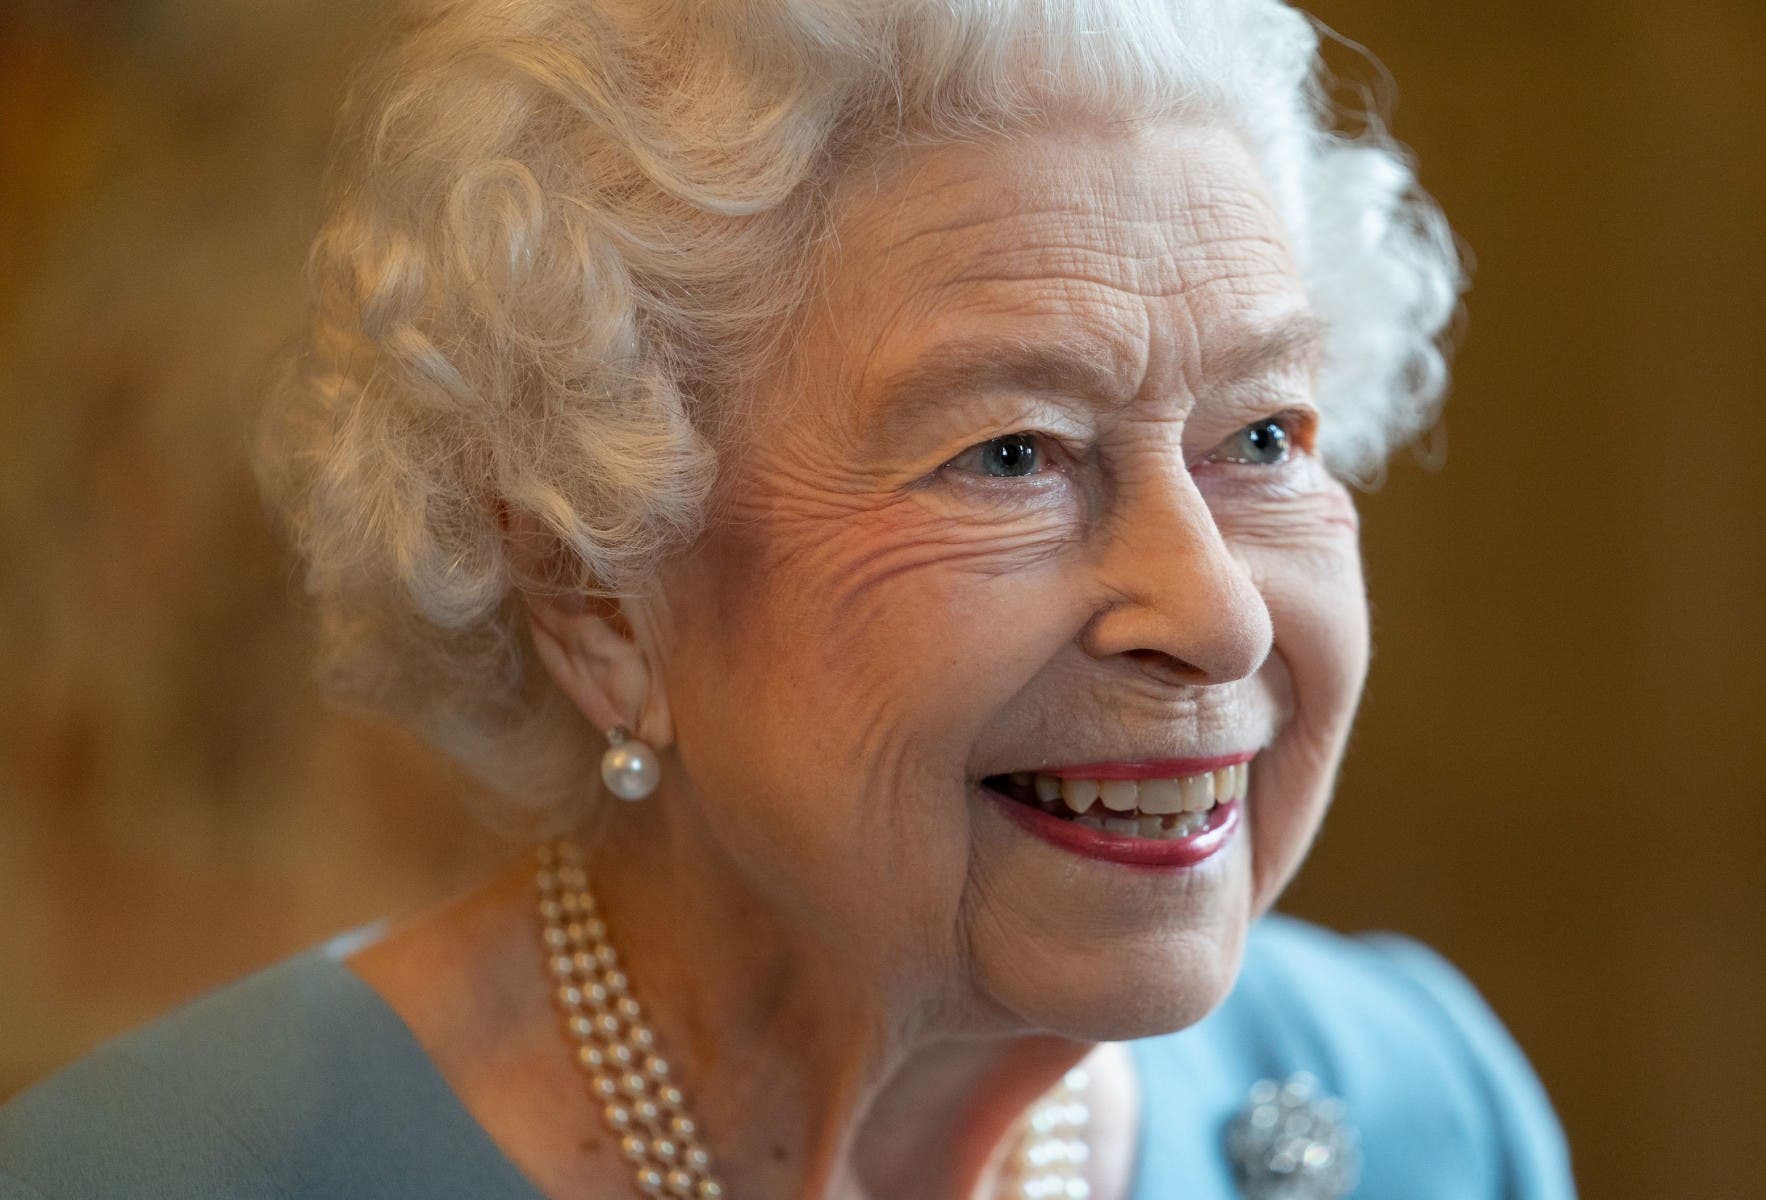  سيخرج نعش الملكة إليزابيث الثانية على أكتاف ستة من حراس منزلها الاسكتلندي